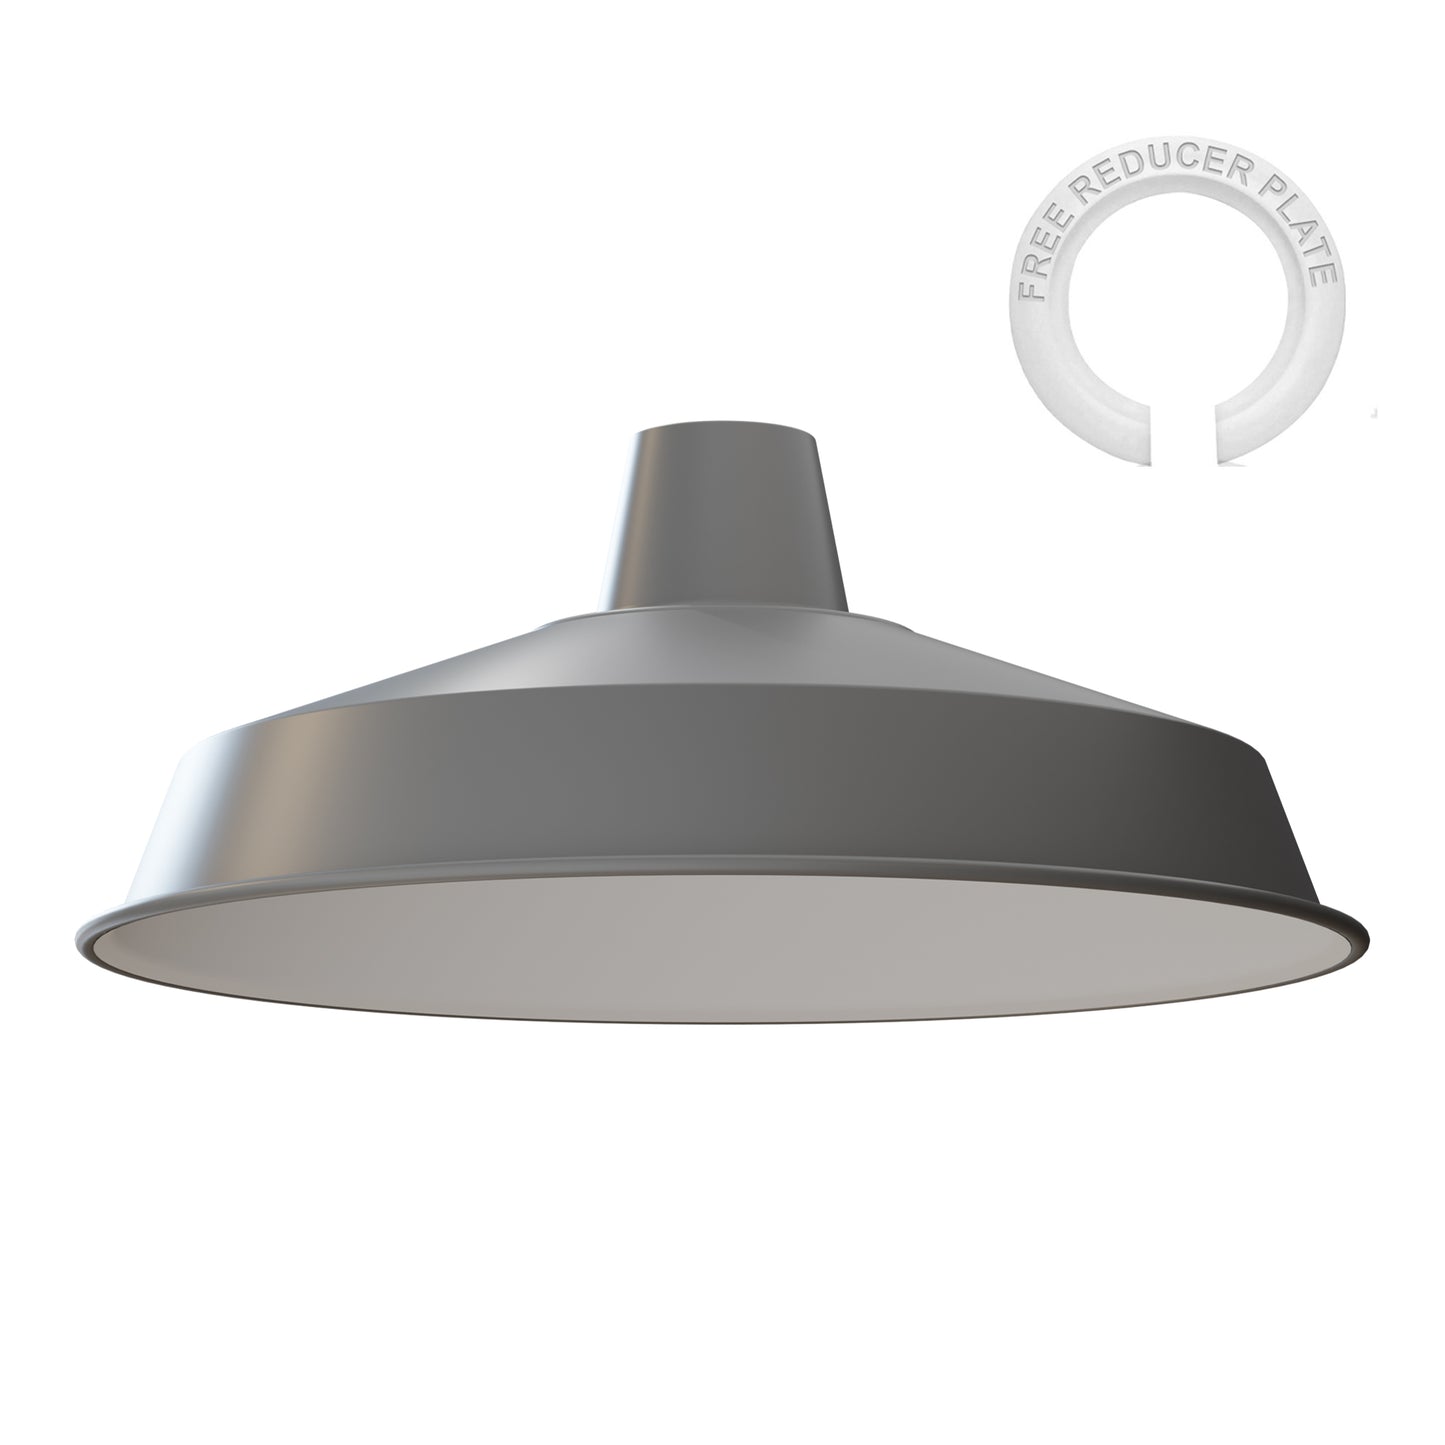 Grey Pendant lamp shade